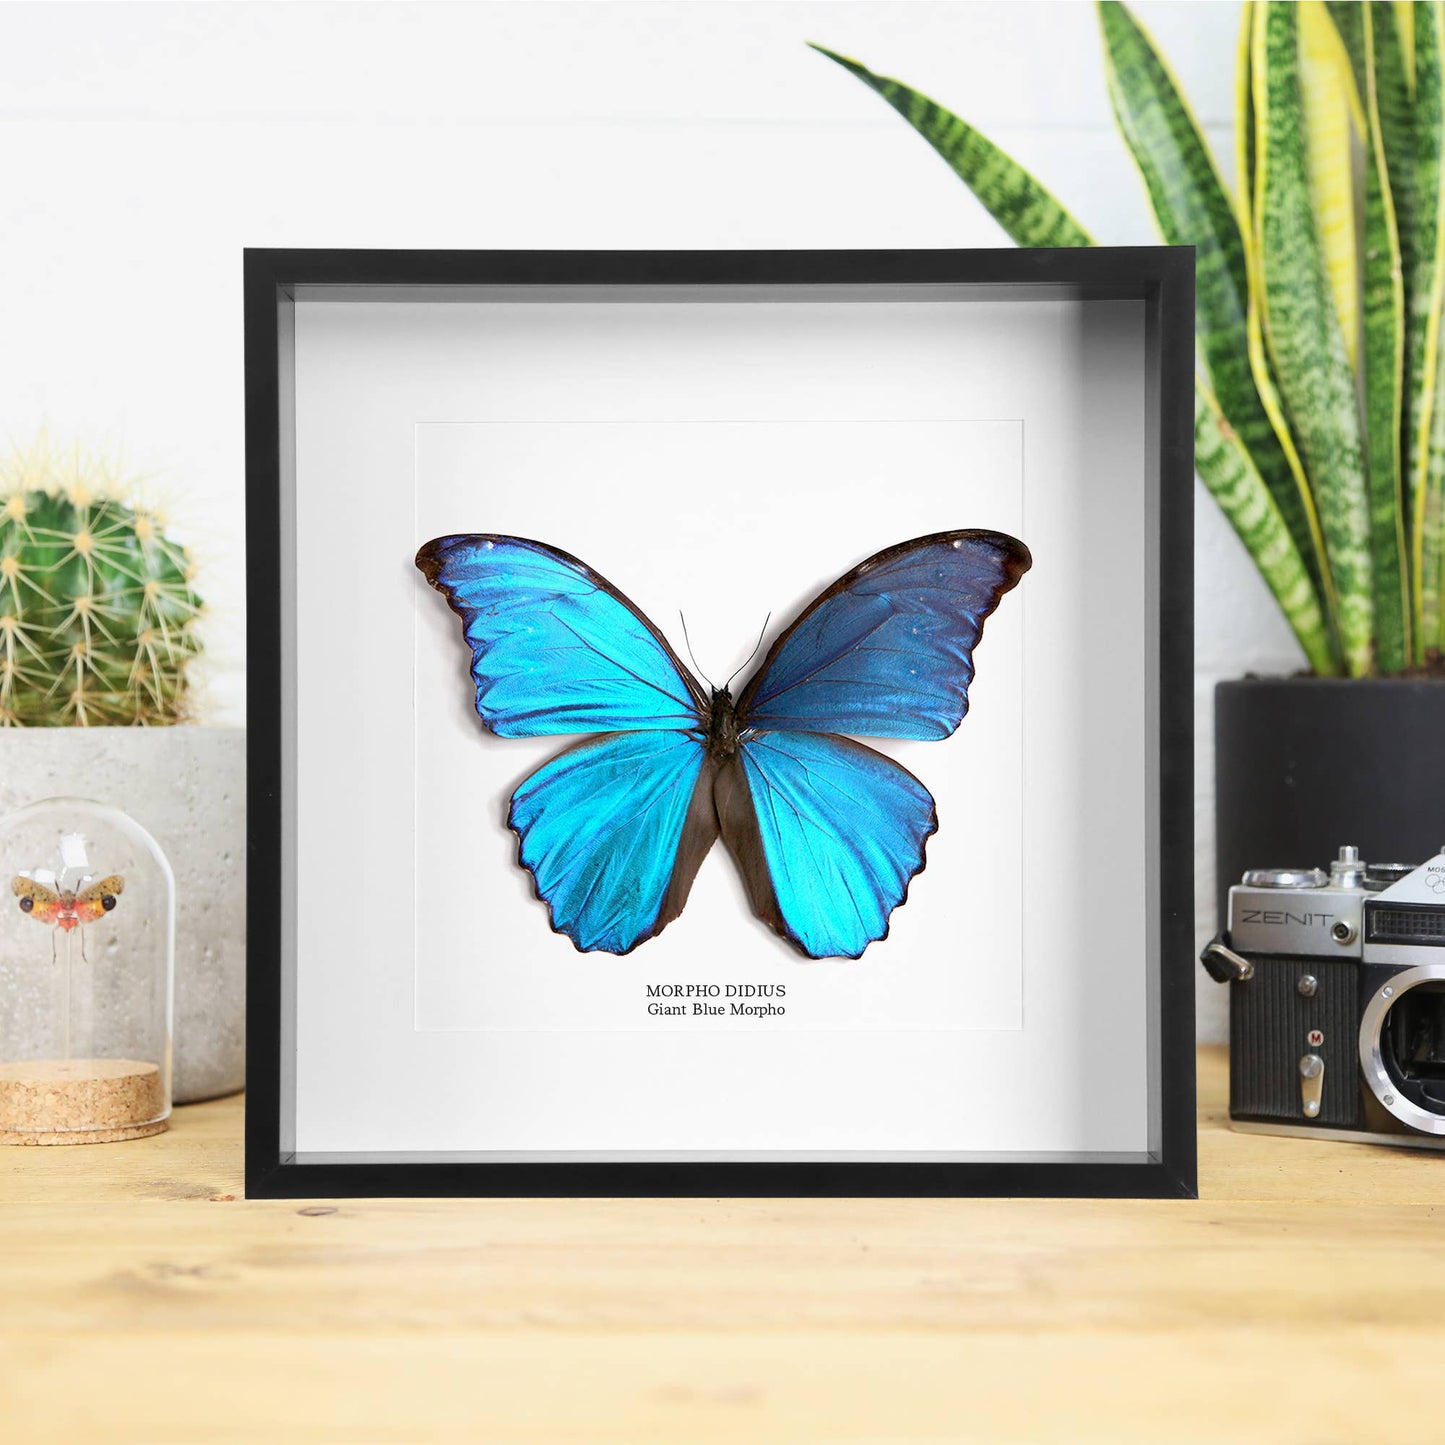 Giant Blue Morpho Butterfly Frame